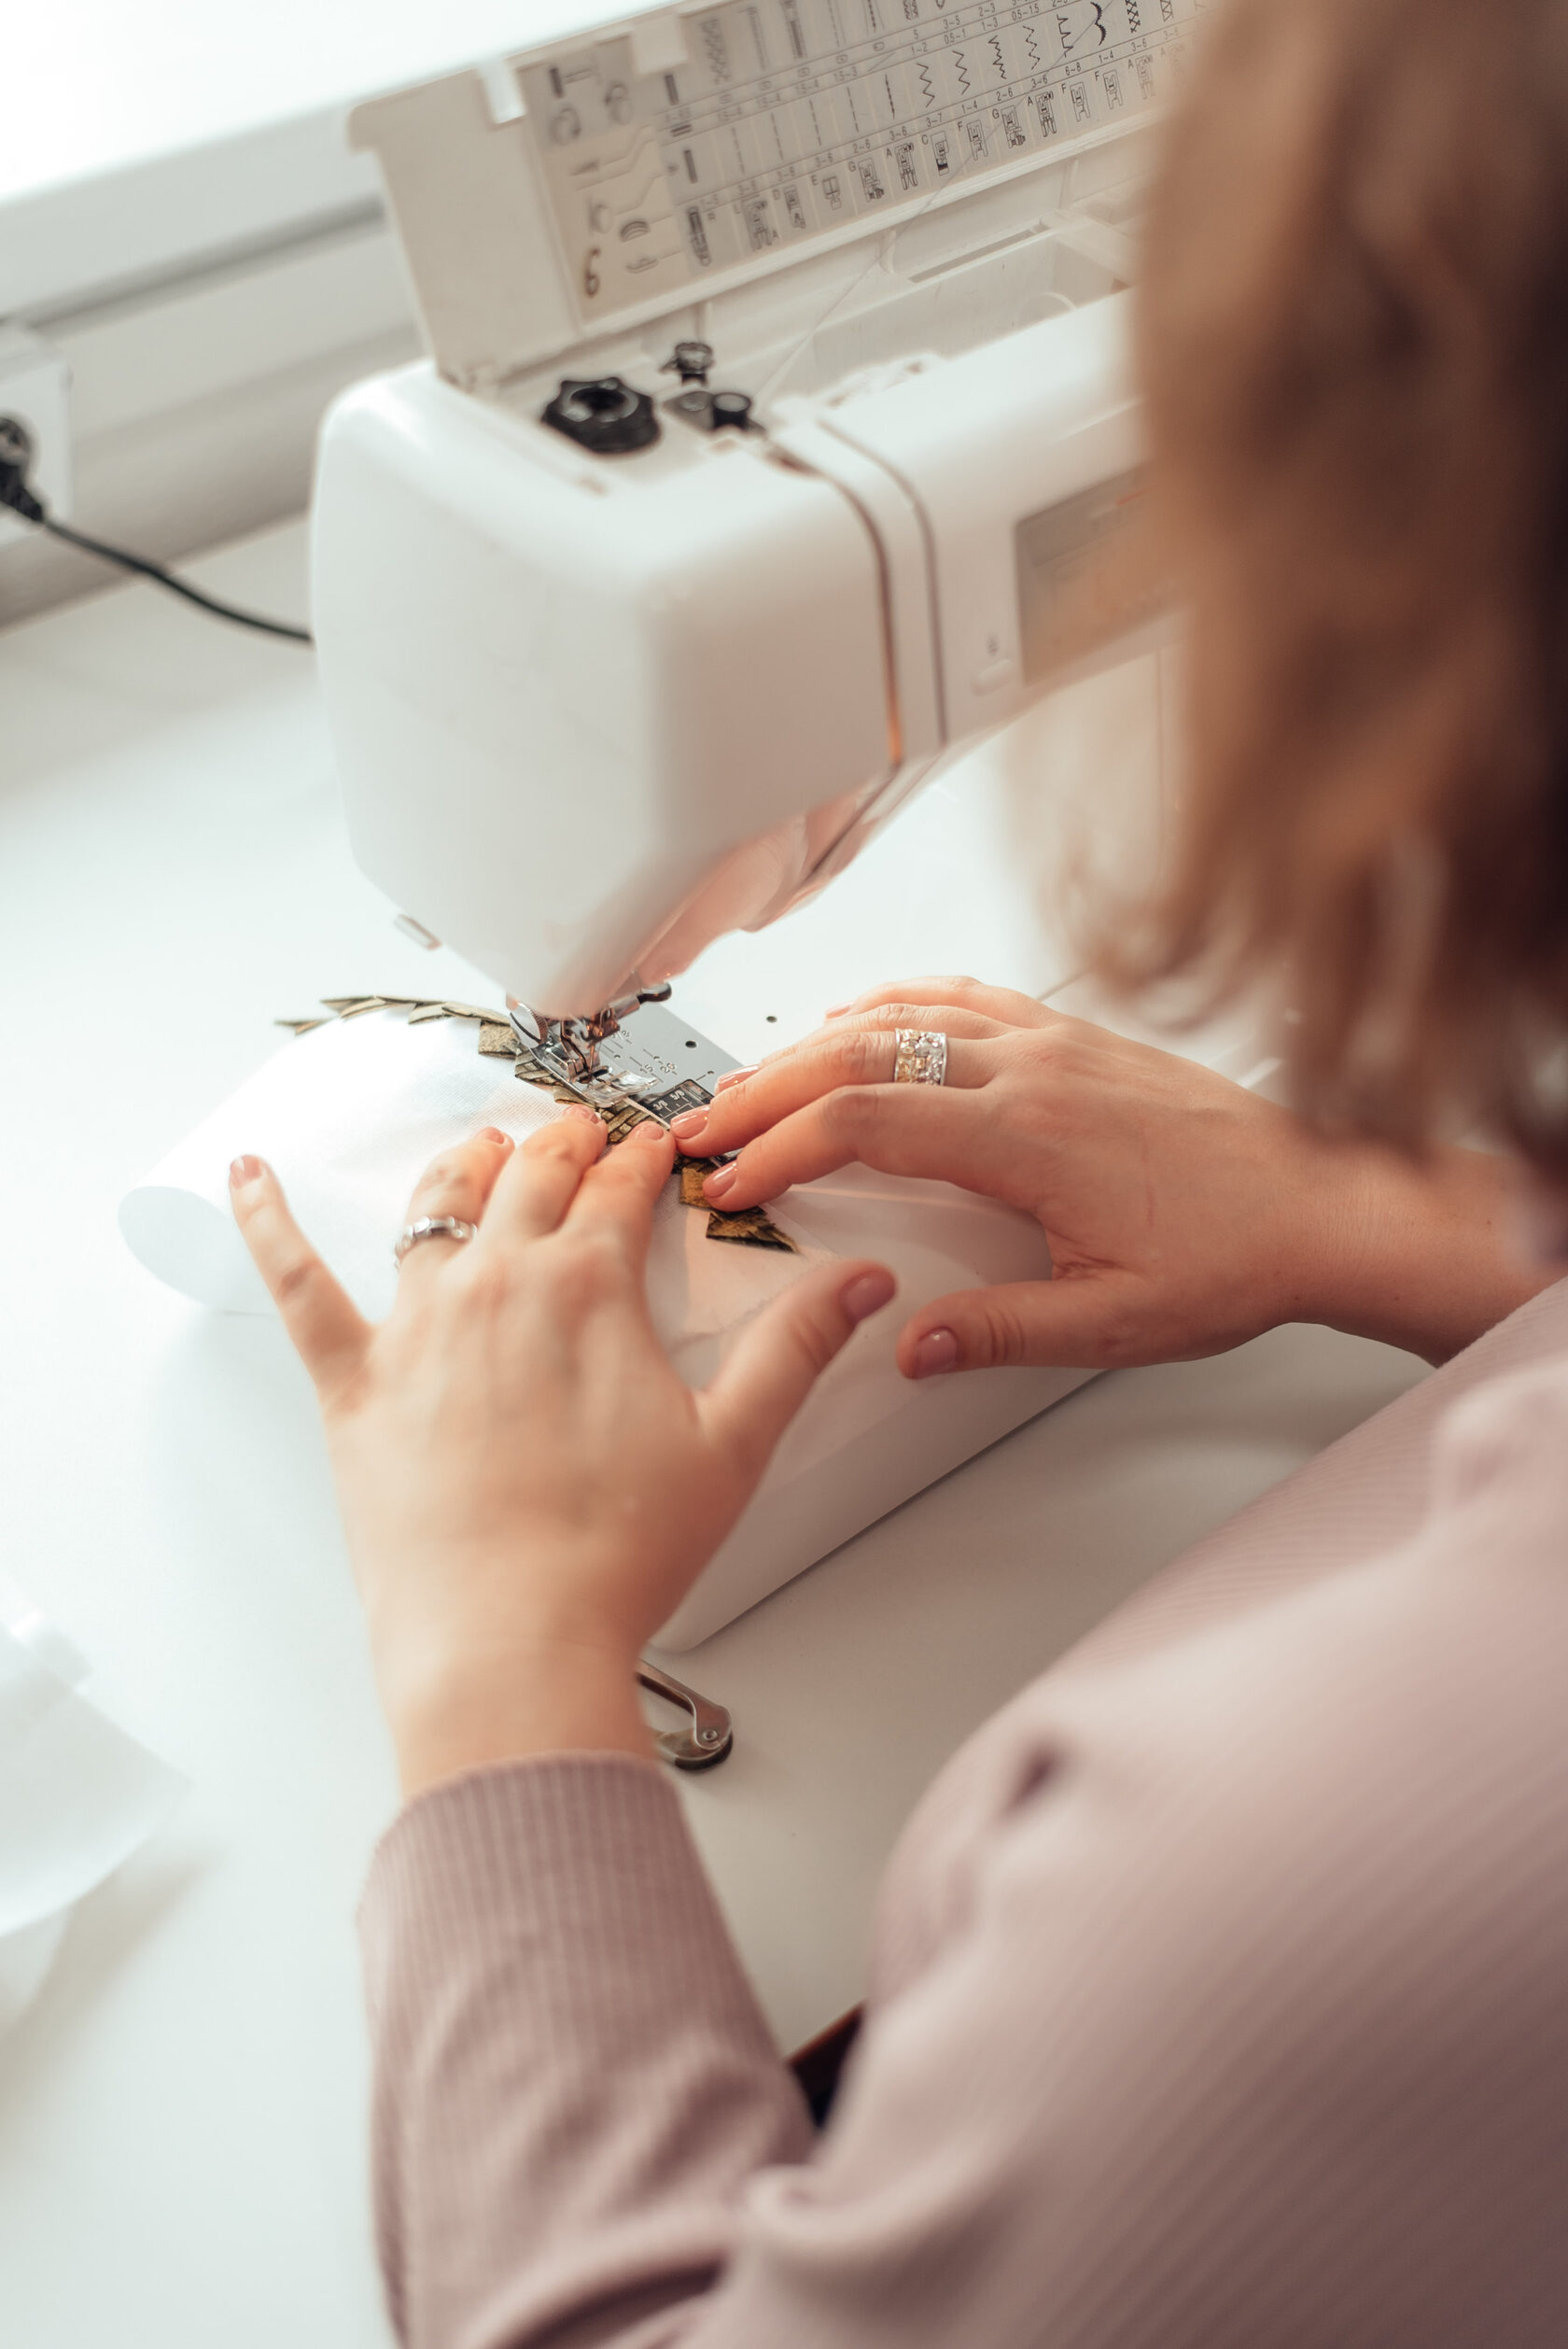 Сама себе швея: 6 способов научиться шить